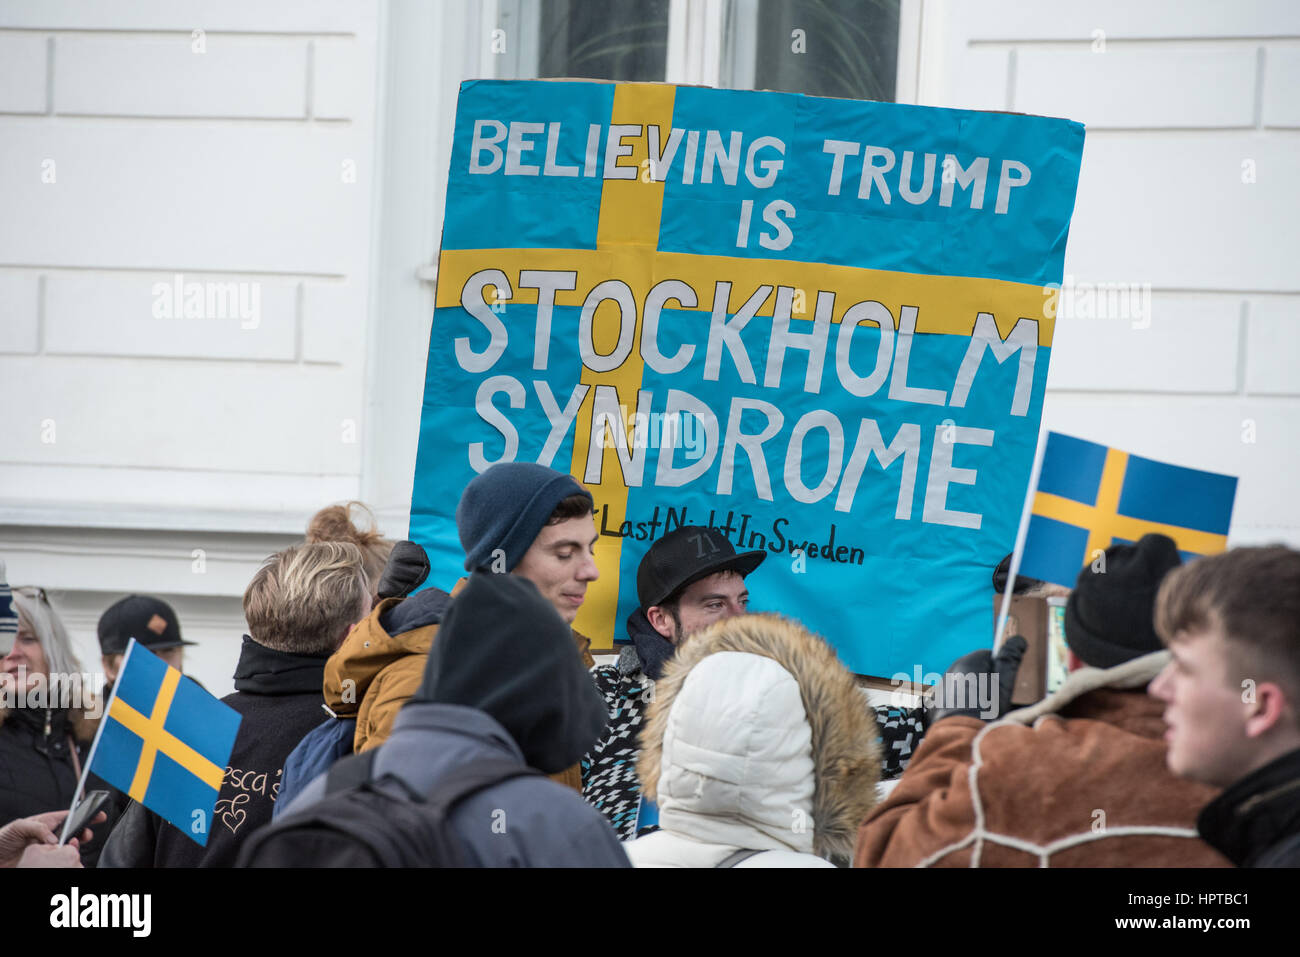 Se estima que más de 100 personas se reunieron fuera de la Embajada de Suecia en Copenhague el viernes, para participar en un simulacro de memorial para demostrar solidaridad con el Reino de Suecia sobre un suceso que nunca ocurrió. La semana pasada el presidente de EEUU, Donald Trump, dijo: "Mire lo que sucedió anoche en Suecia", durante un discurso condenando la inmigración musulmana en los países occidentales. Desconcertado suecos argumentaron que la noche en cuestión fue tranquilo. Para resaltar el error, el artista danés Artpusher organizó un simulacro de vigilia. Foto de stock